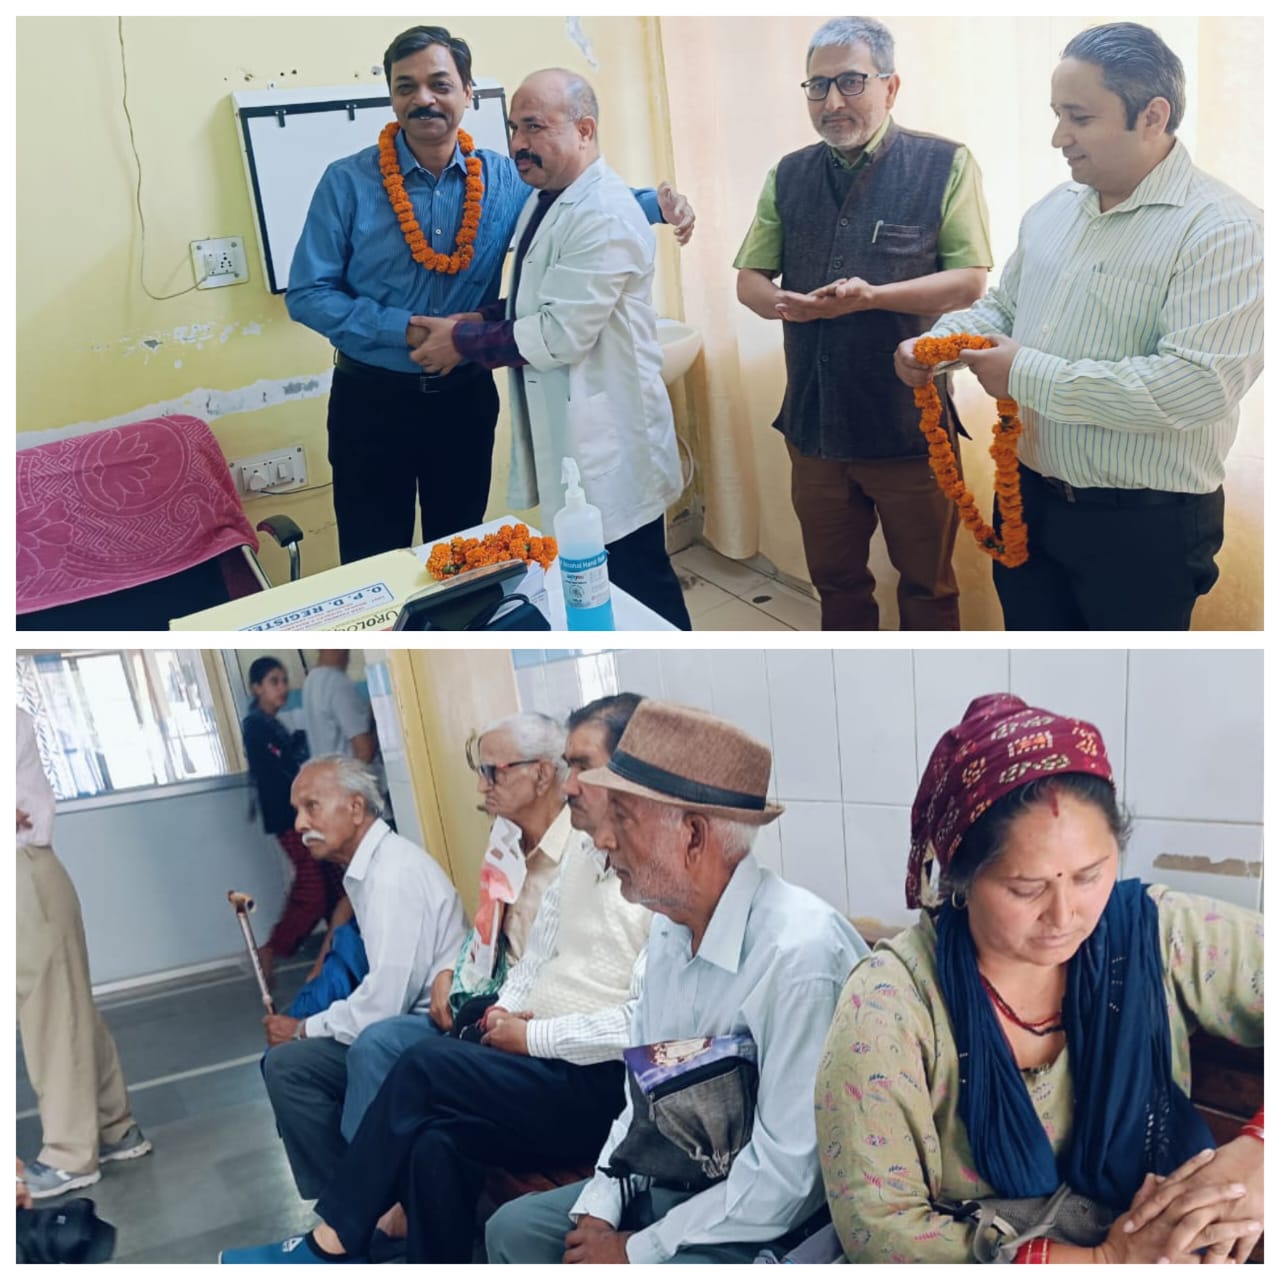 बेस चिकित्सालय श्रीनगर में यूरोलॉजी की ओपीडी में पहले दिन 22 से अधिक मरीज पहुंचे